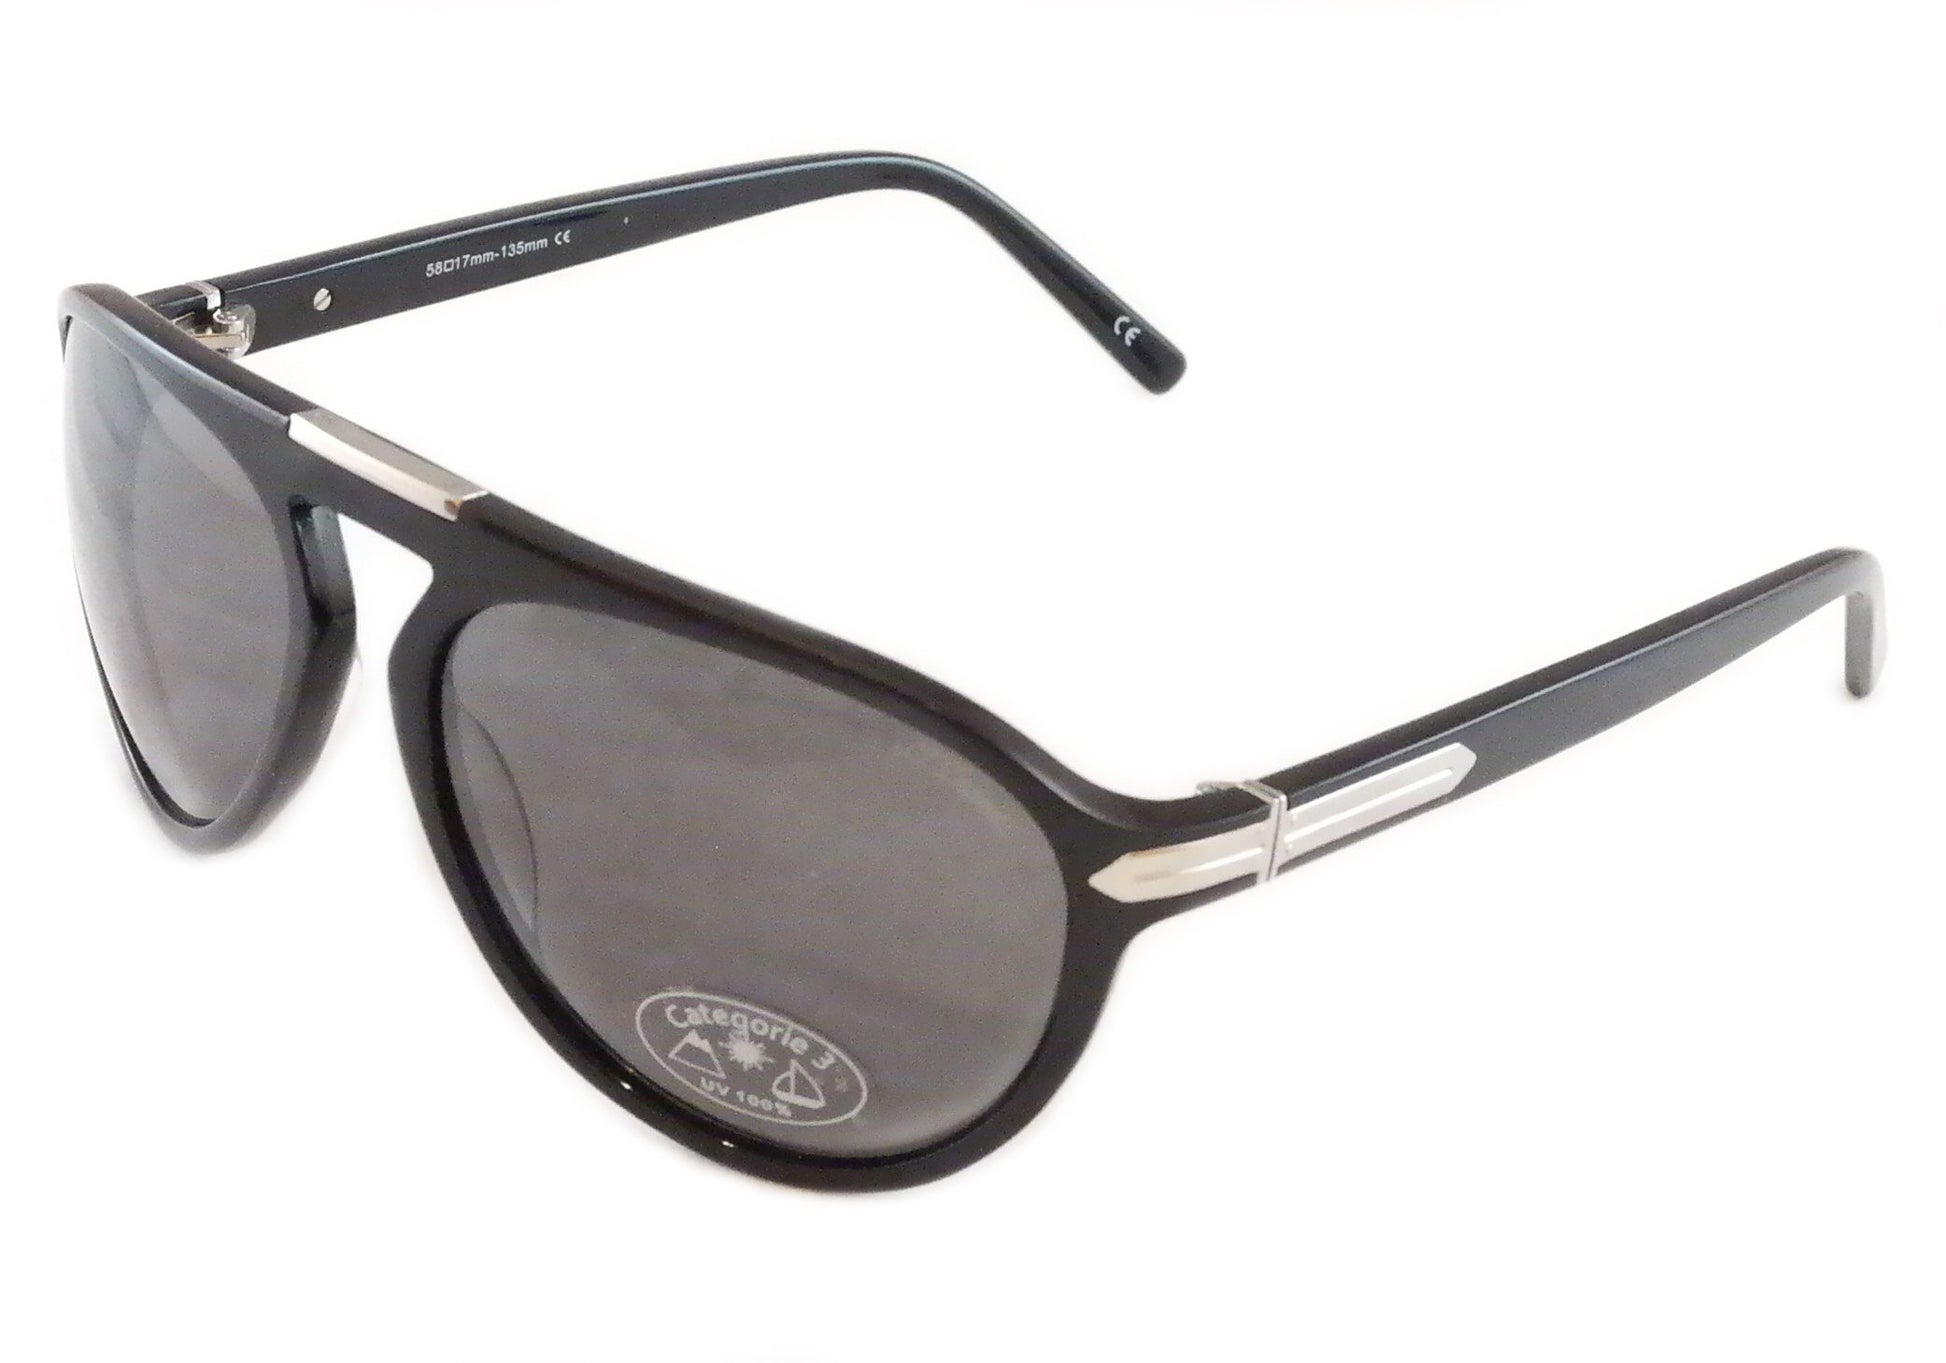 S. T. Dupont Sunglasses ST013 Polarized Plastic Italy 100% UV 3 Lenses 58-17-135 - Frame Bay